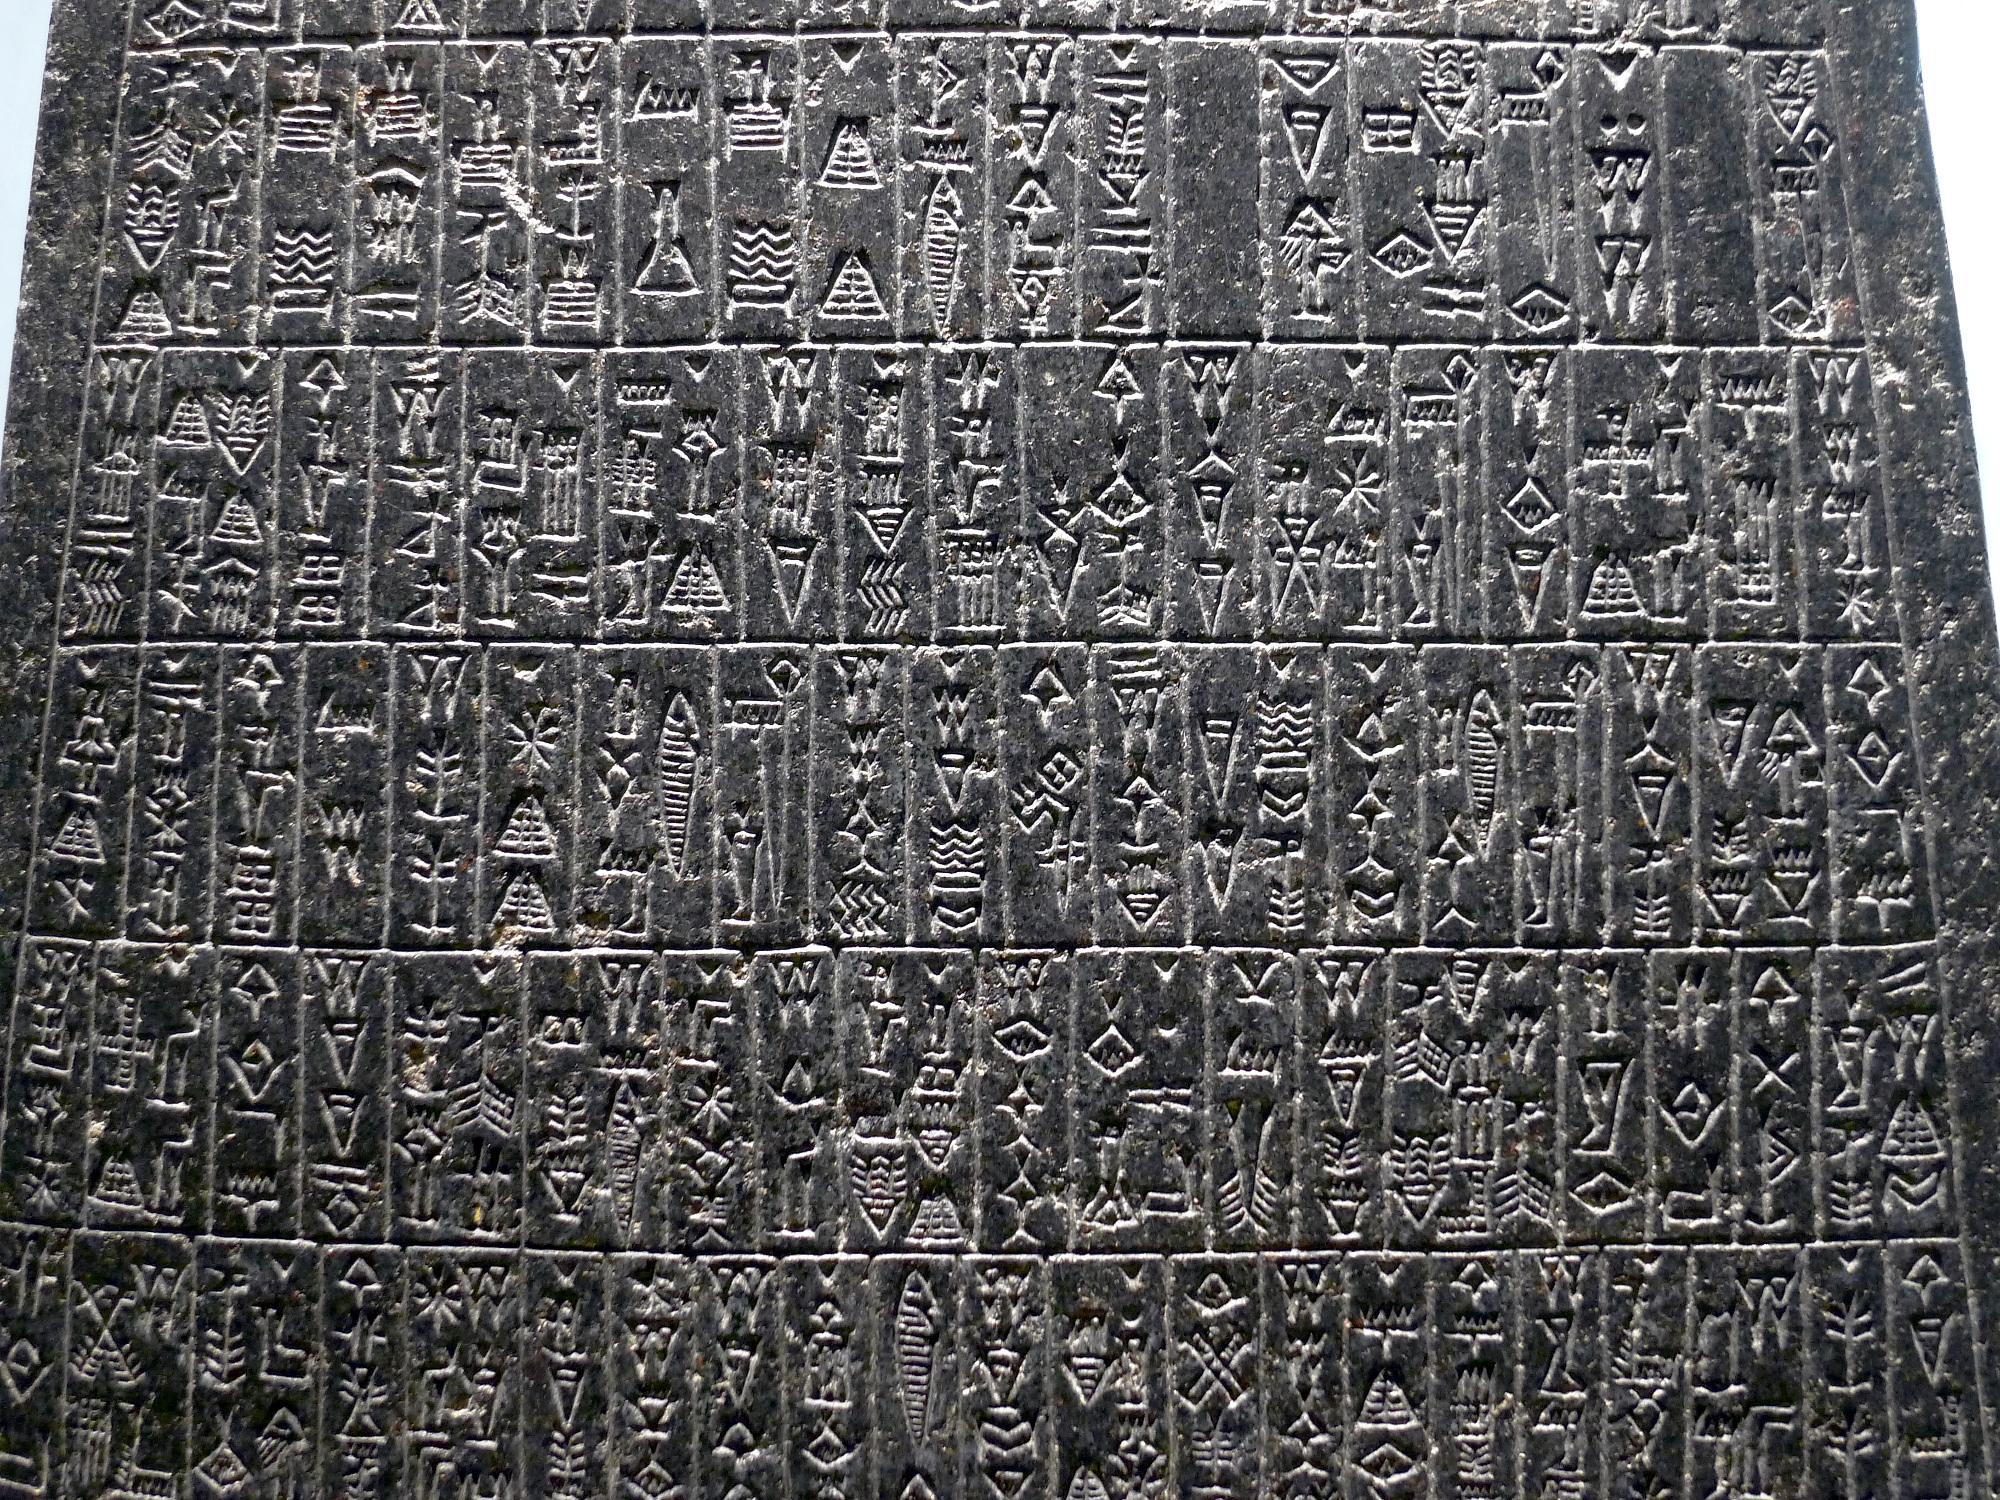 Inscrições em acadiano no obelisco de Manistusu